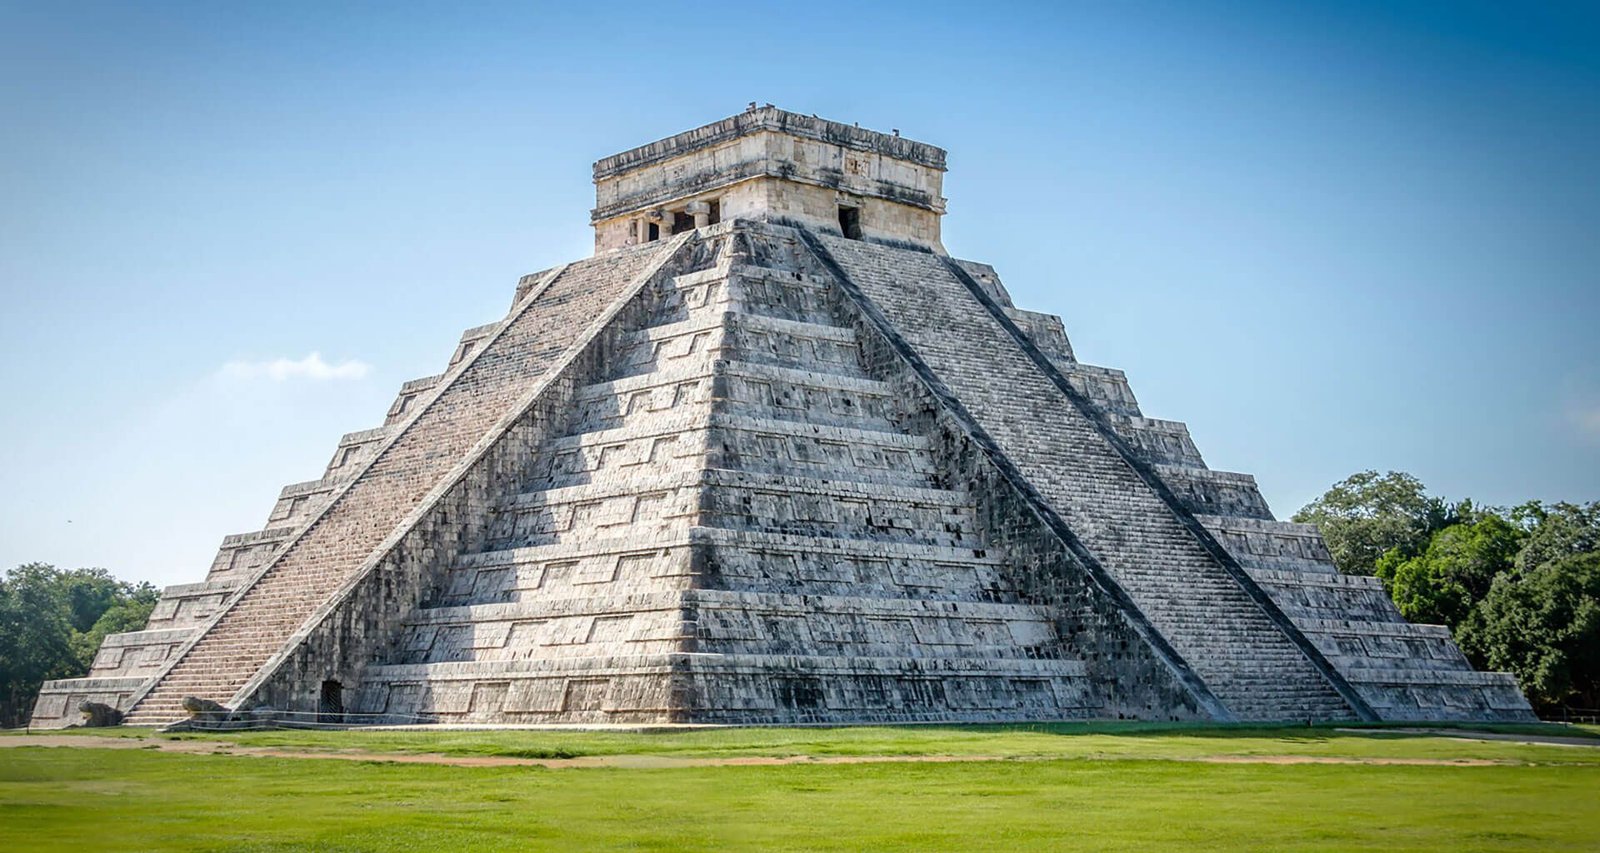 Descoberta em pirâmide revela colapso dramático da dinastia maia, dizem arqueólogos